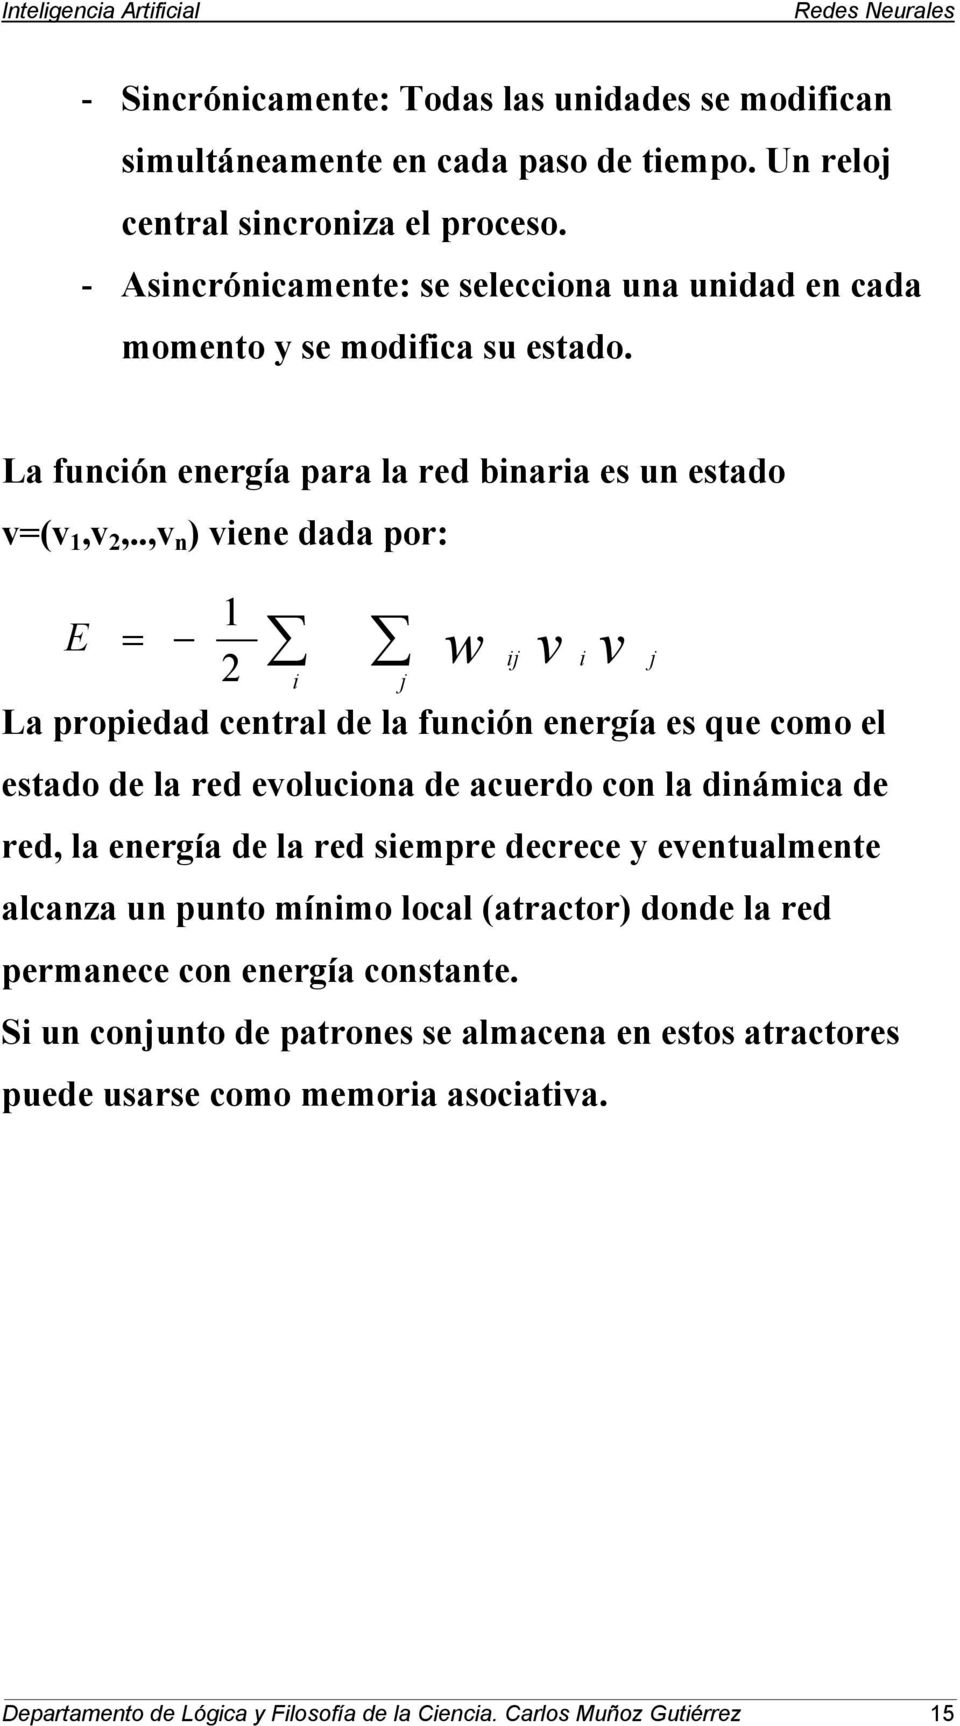 .,v n ) vene dada por: E = 1 2 La propedad central de la funcón energía es que como el estado de la red evolucona de acuerdo con la dnámca de red, la energía de la red sempre